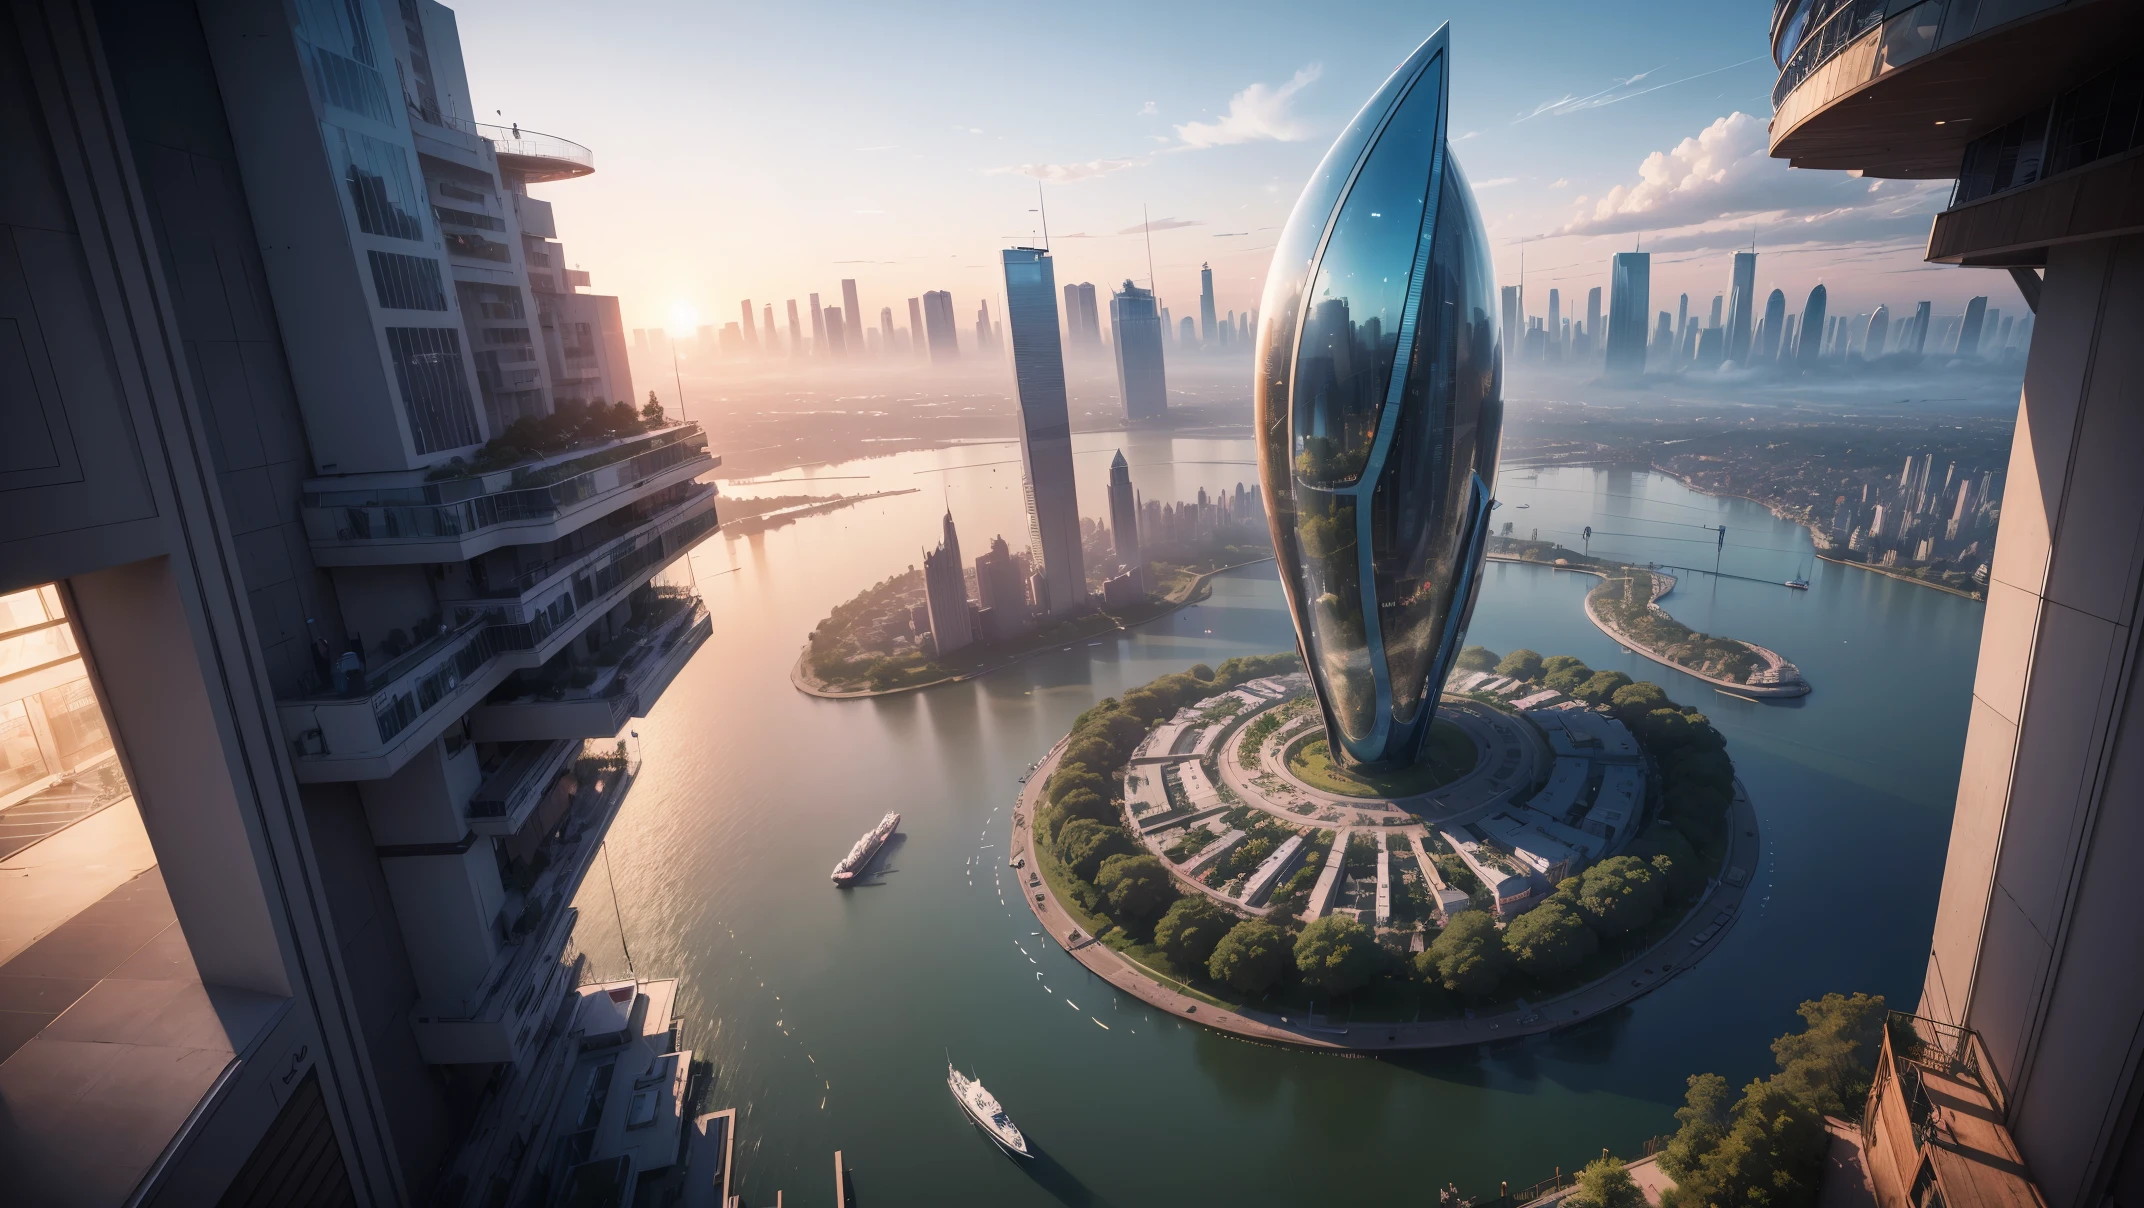 (最好的品質,4k,8K,高解析度,傑作:1.2),超詳細,(實際的,逼真的,照片般逼真:1.37),未來漂浮天空之城,未来科技,龐大的城市高科技平板平台,飛艇,漂浮在空中,未來城市,周圍有小飛艇,高科技半球形平台,彩灯,先進的架構,伊斯蘭建築,現代建築,摩天大楼,存取雲,風景優美,俯瞰城市,令人印象深刻的設計,與自然無縫融合,充滿活力和活力的氛圍,未來交通系統,停車已暫停,透明路徑,郁郁葱葱的绿色植物,空中花園,瀑布,壯麗的天際線,水面上的倒影,波光粼粼的河流,建築創新,futuristic 摩天大楼s,透明圓頂,建築物的形狀很不尋常,高架走道,令人印象深刻的天際線,发光的灯光,未来科技,簡約設計,風景名勝區,全景,穿雲塔,鮮豔的色彩,史詩般的日出,史詩般的日落,炫目的燈光顯示,神奇的氛围,未來城市,城市烏托邦,奢華生活方式,創新能源,永續發展,智慧城市技術,先進的基礎設施,宁静的气氛,自然與科技和諧相處,令人驚嘆的城市景觀,前所未有的都市規劃,建築與自然無縫銜接,高科技大都市,尖端的工程奇蹟,城市生活的未來,富有遠見的建築概念,節能建築,與環境和諧,一座漂浮在雲端的城市,烏托邦夢想成現實,可能性是無止境,最先進的交通網絡,綠色能源融合,創新材料,令人印象深刻的全息顯示,先進的通訊系統,令人驚嘆的鳥瞰圖,安靜祥和的環境,現代主義美學,空灵之美